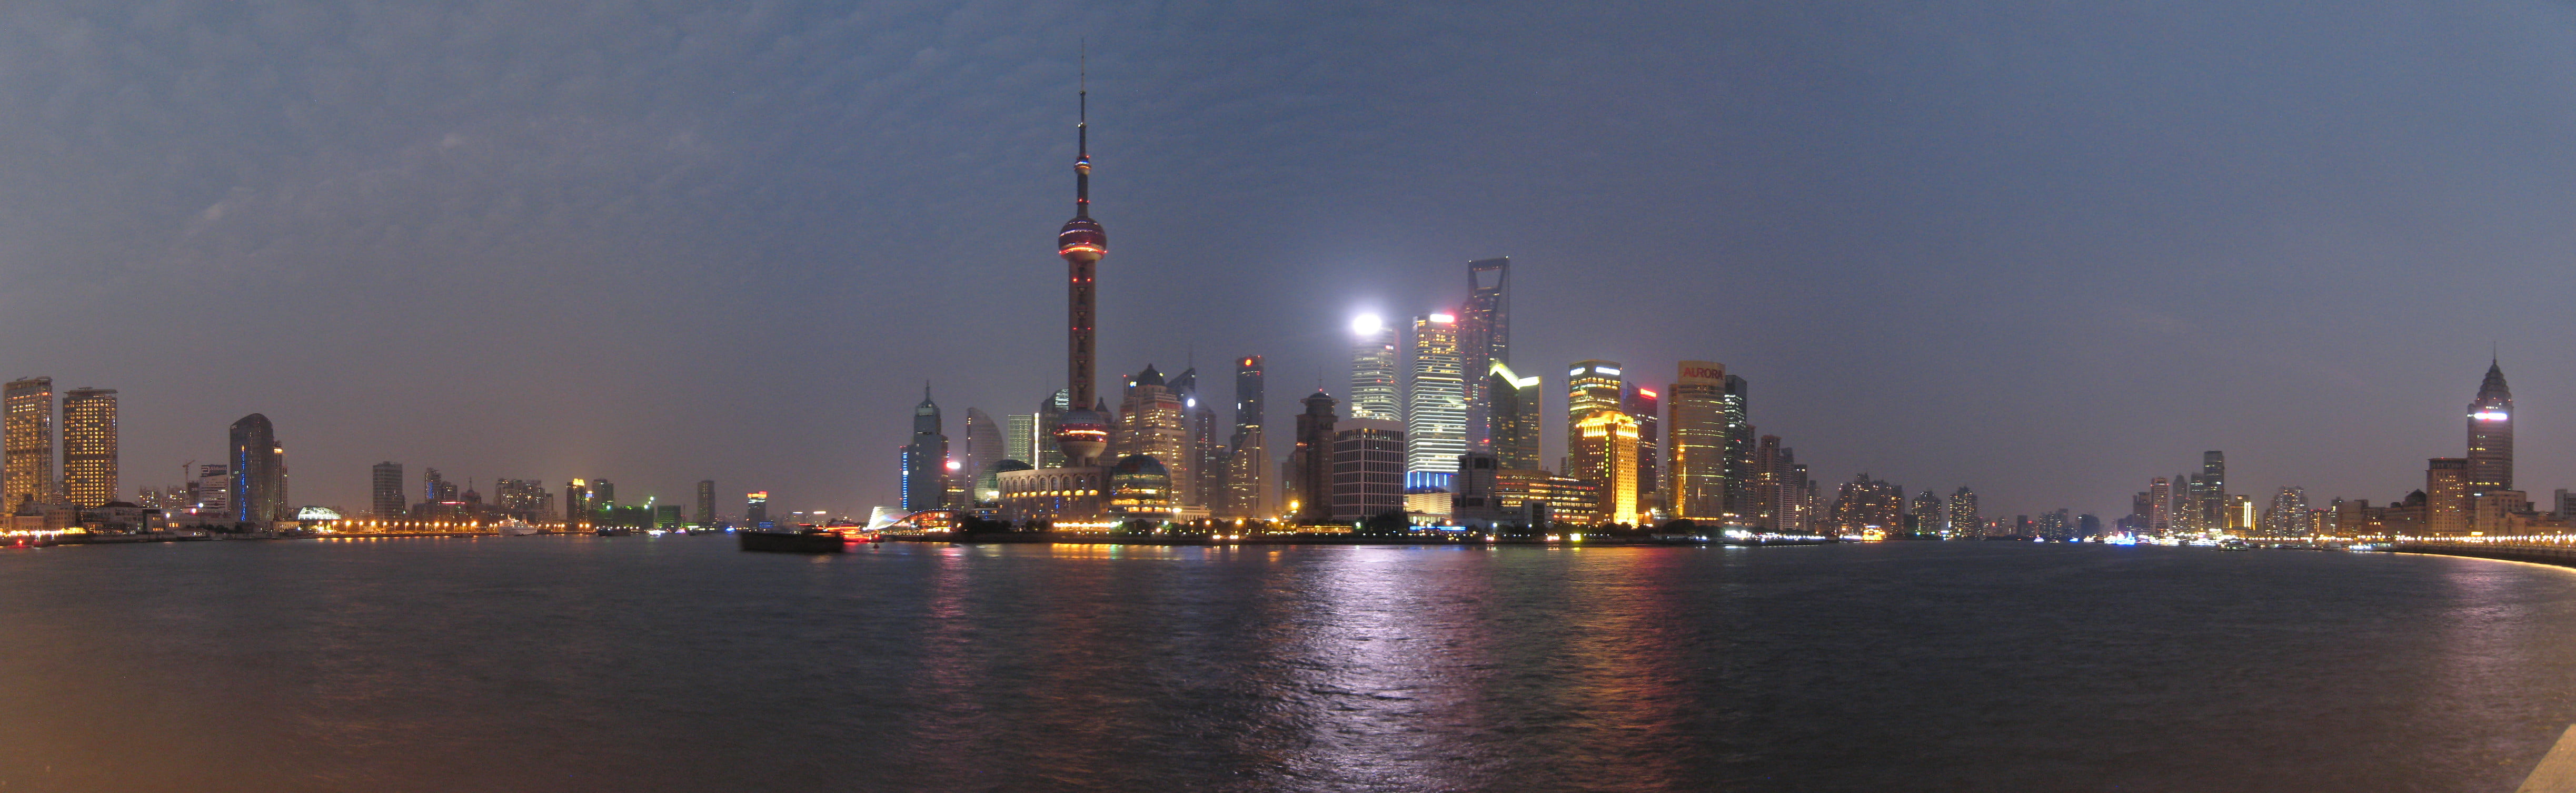 high rise building, shanghai, shanghai, night, skyline, China